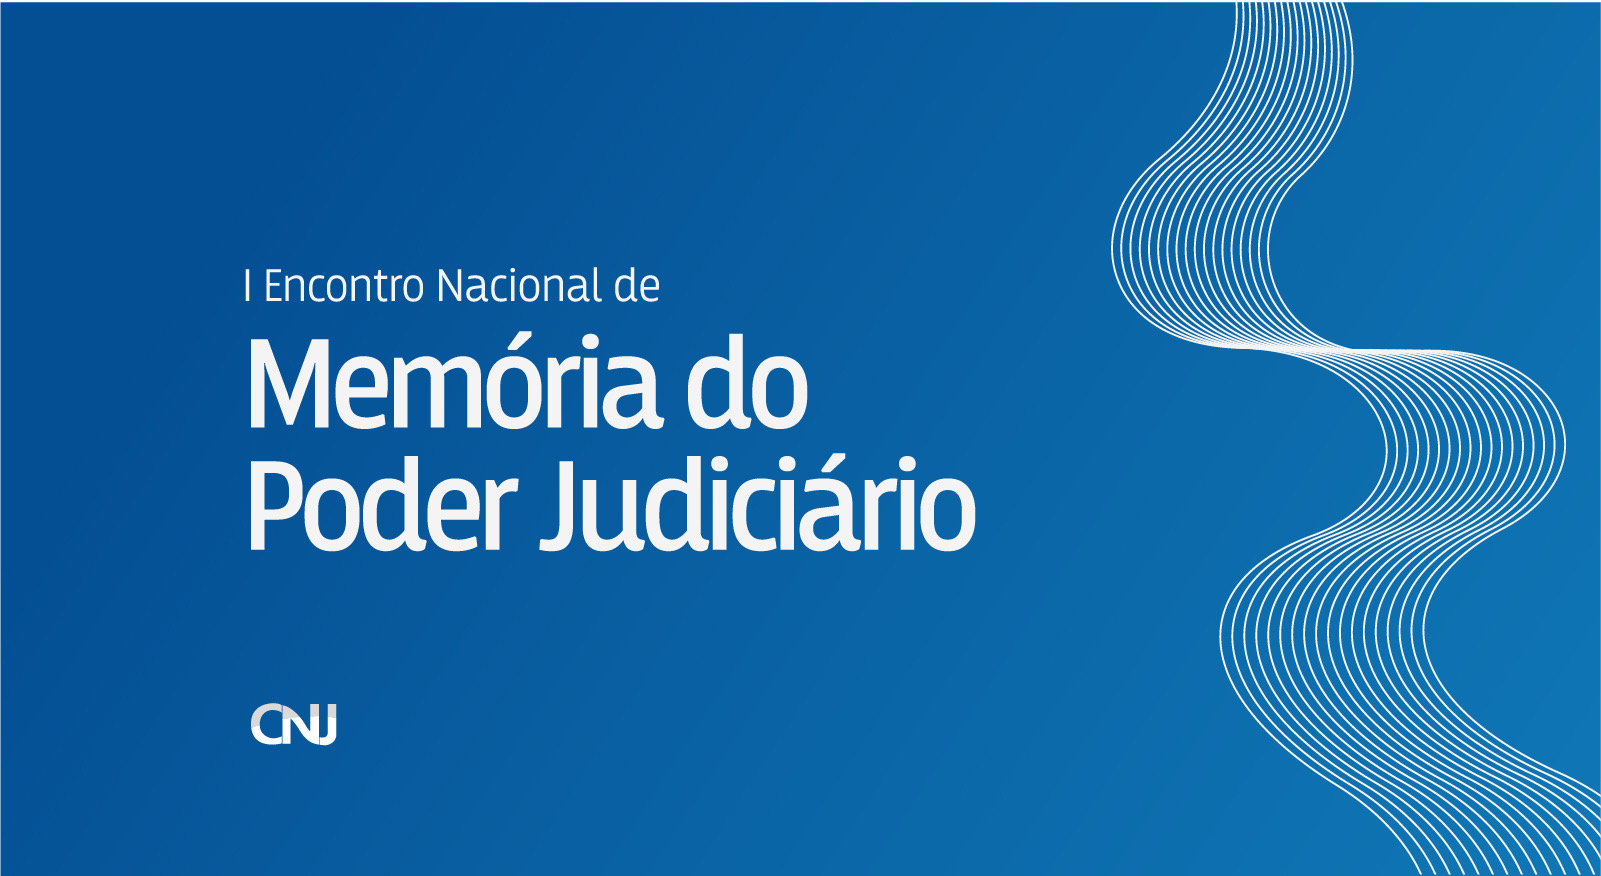 INSTITUCIONAL: CNJ realizará o I Encontro Nacional de Memória do Poder Judiciário